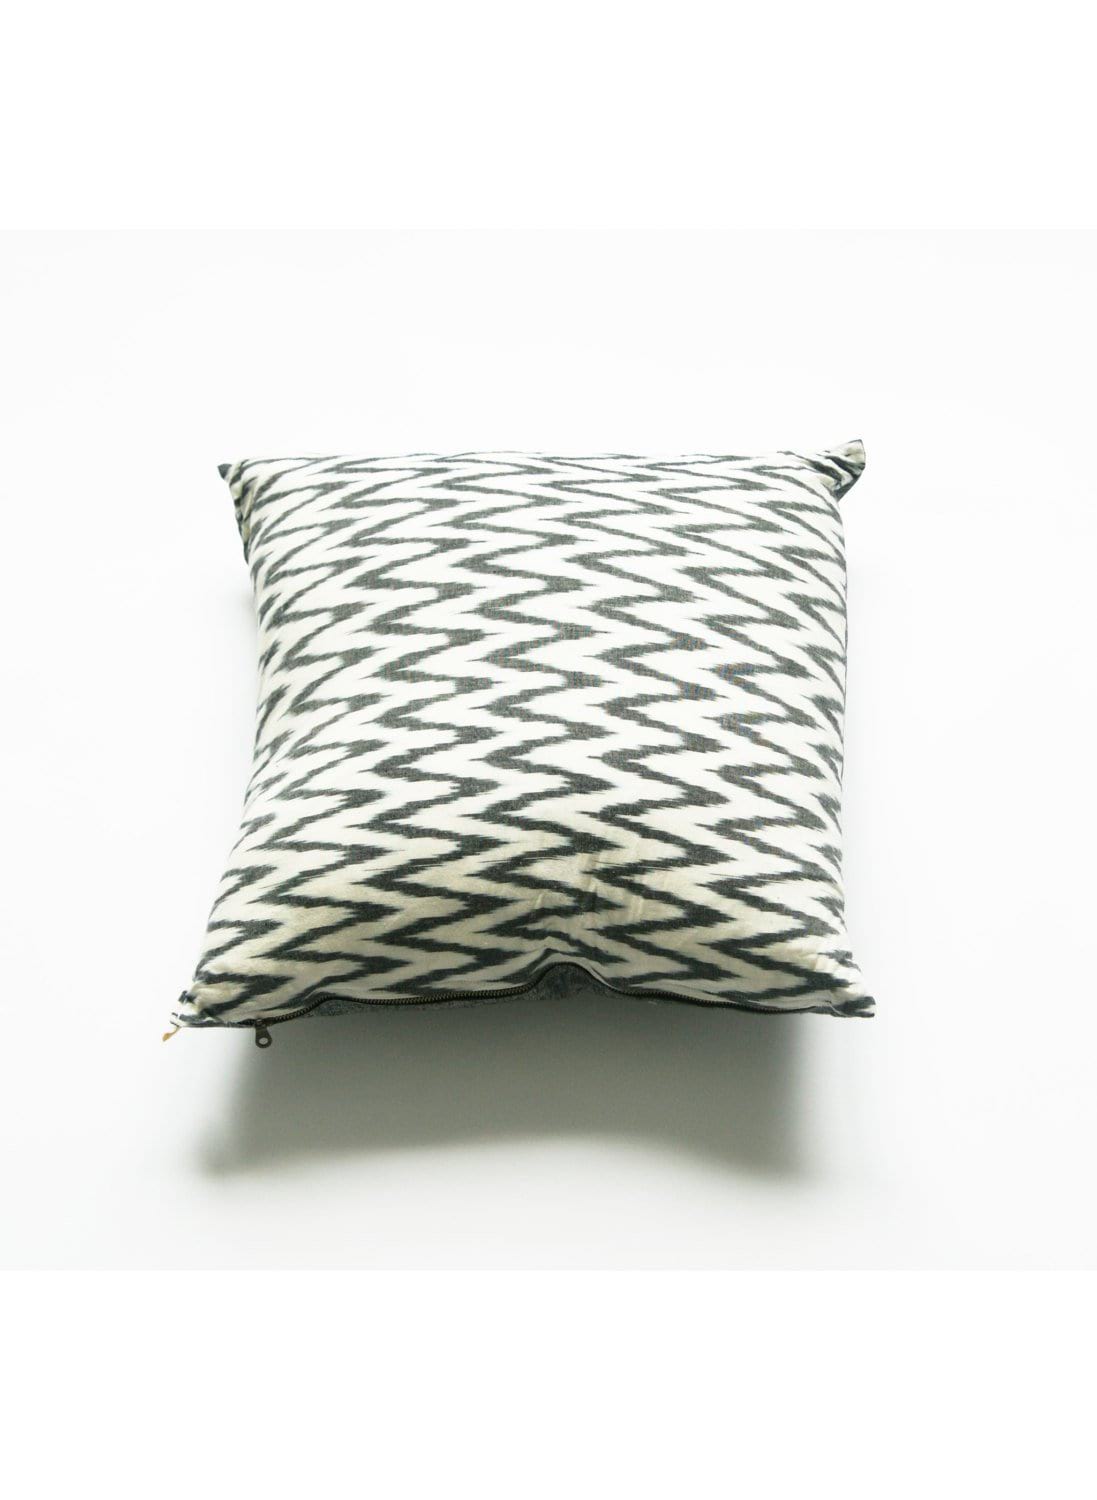 Grey and White Chevron Cotton Woven Ikat Pillow 20 x 20